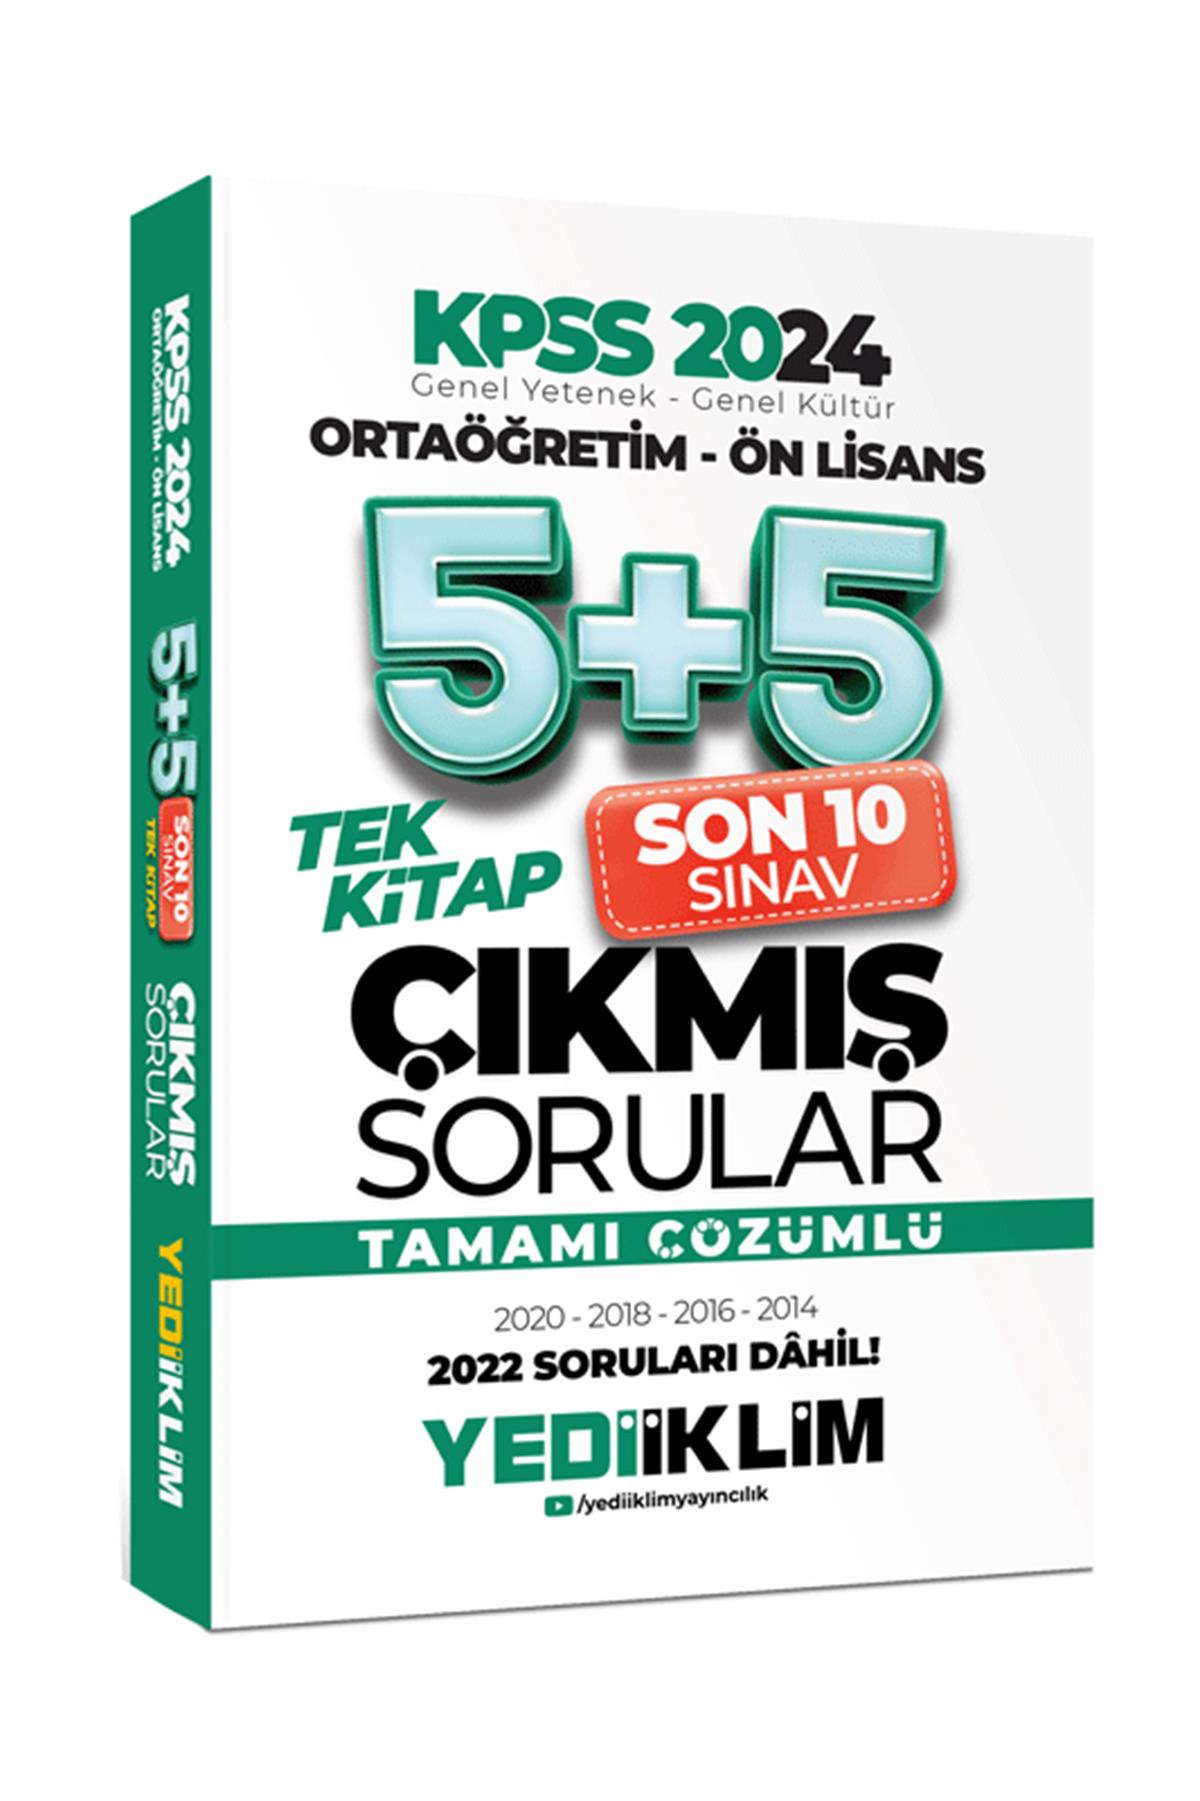 Yediiklim Yayınları 2024 KPSS Ortaöğretim - Ön Lisans Genel Yetenek Genel  Kültür Tamamı Çözümlü 5+5 Çıkmış Sorular Tek Kitap